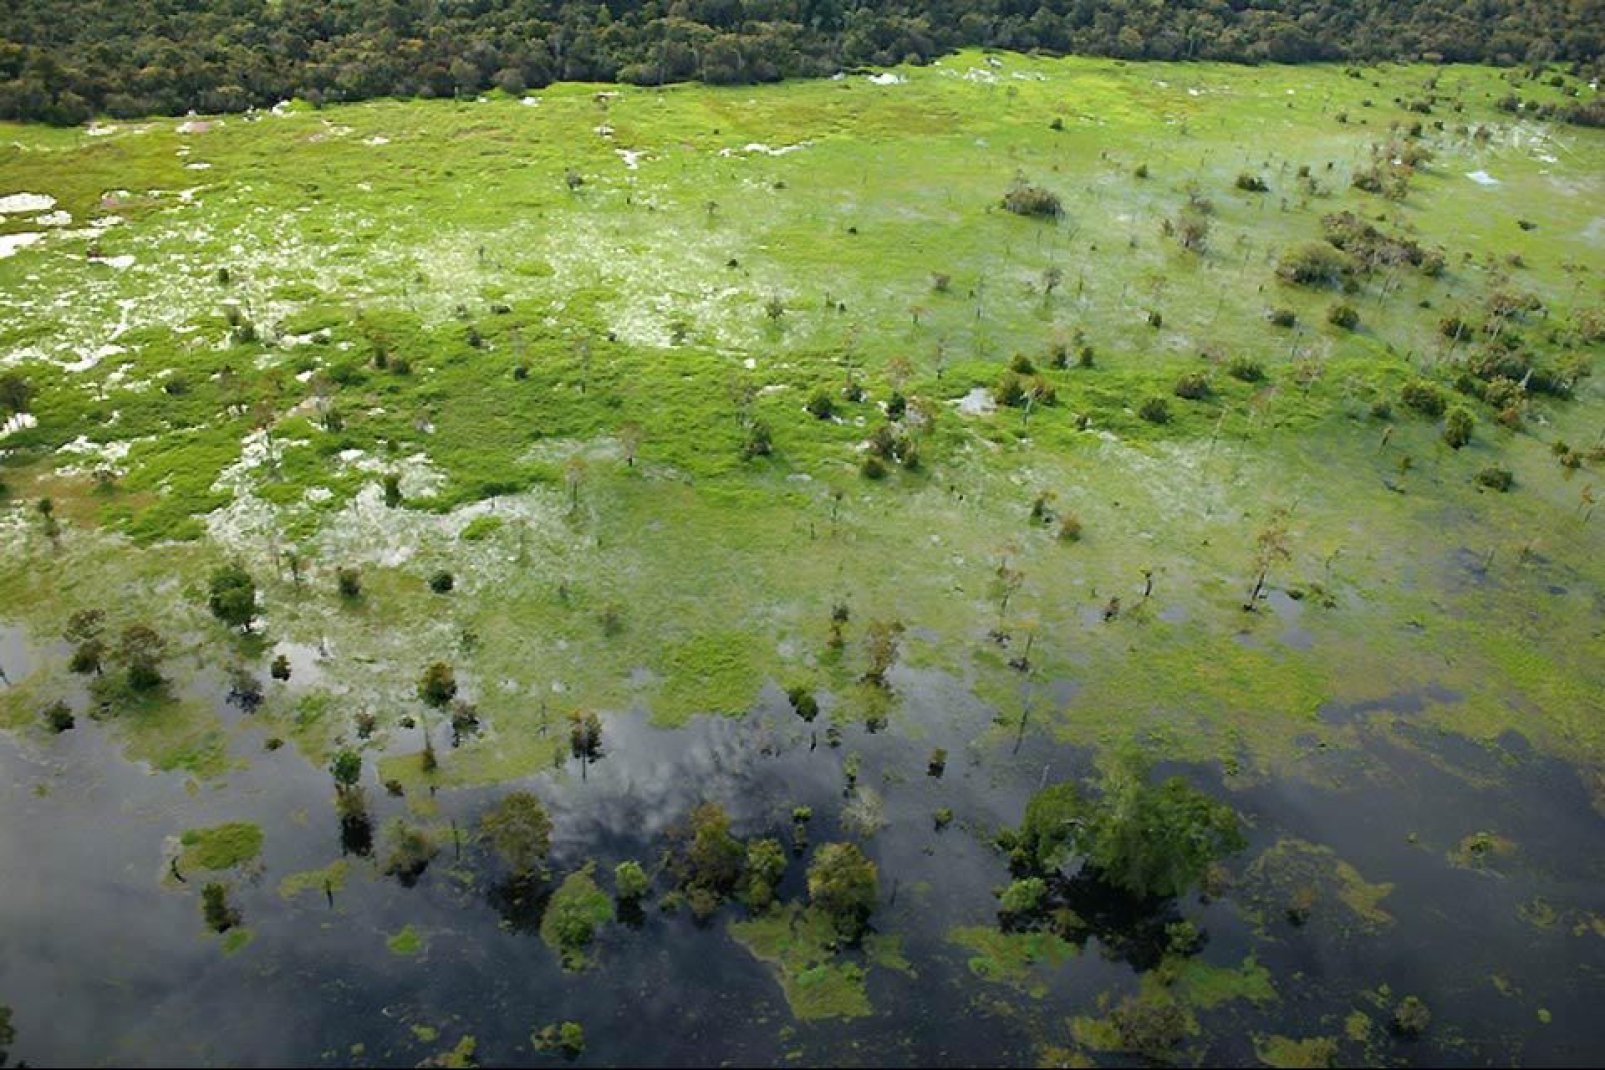 Manaus sieht inmitten dieses Pflanzenmeeres richtig klein aus.